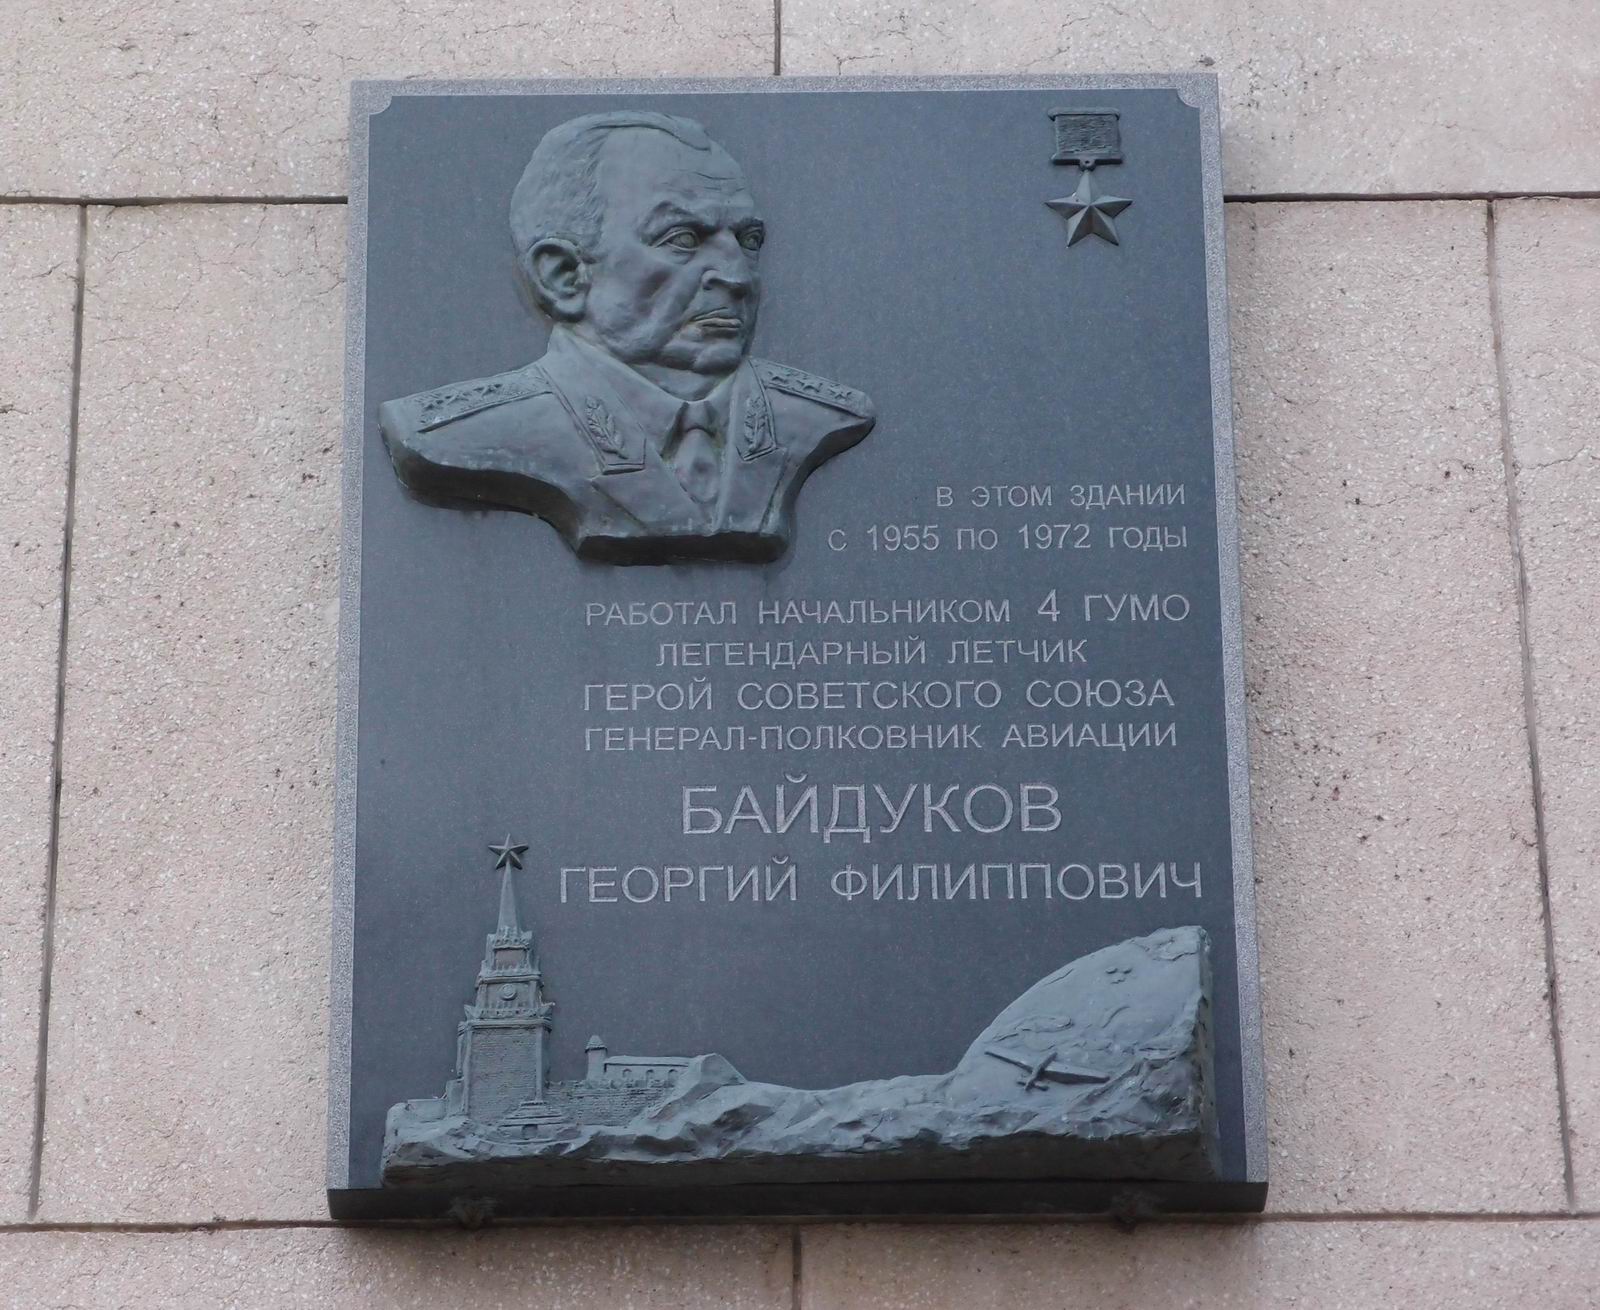 Мемориальная доска Байдукову Г.Ф. (1907–1994), на Фрунзенской набережной, дом 22/2.